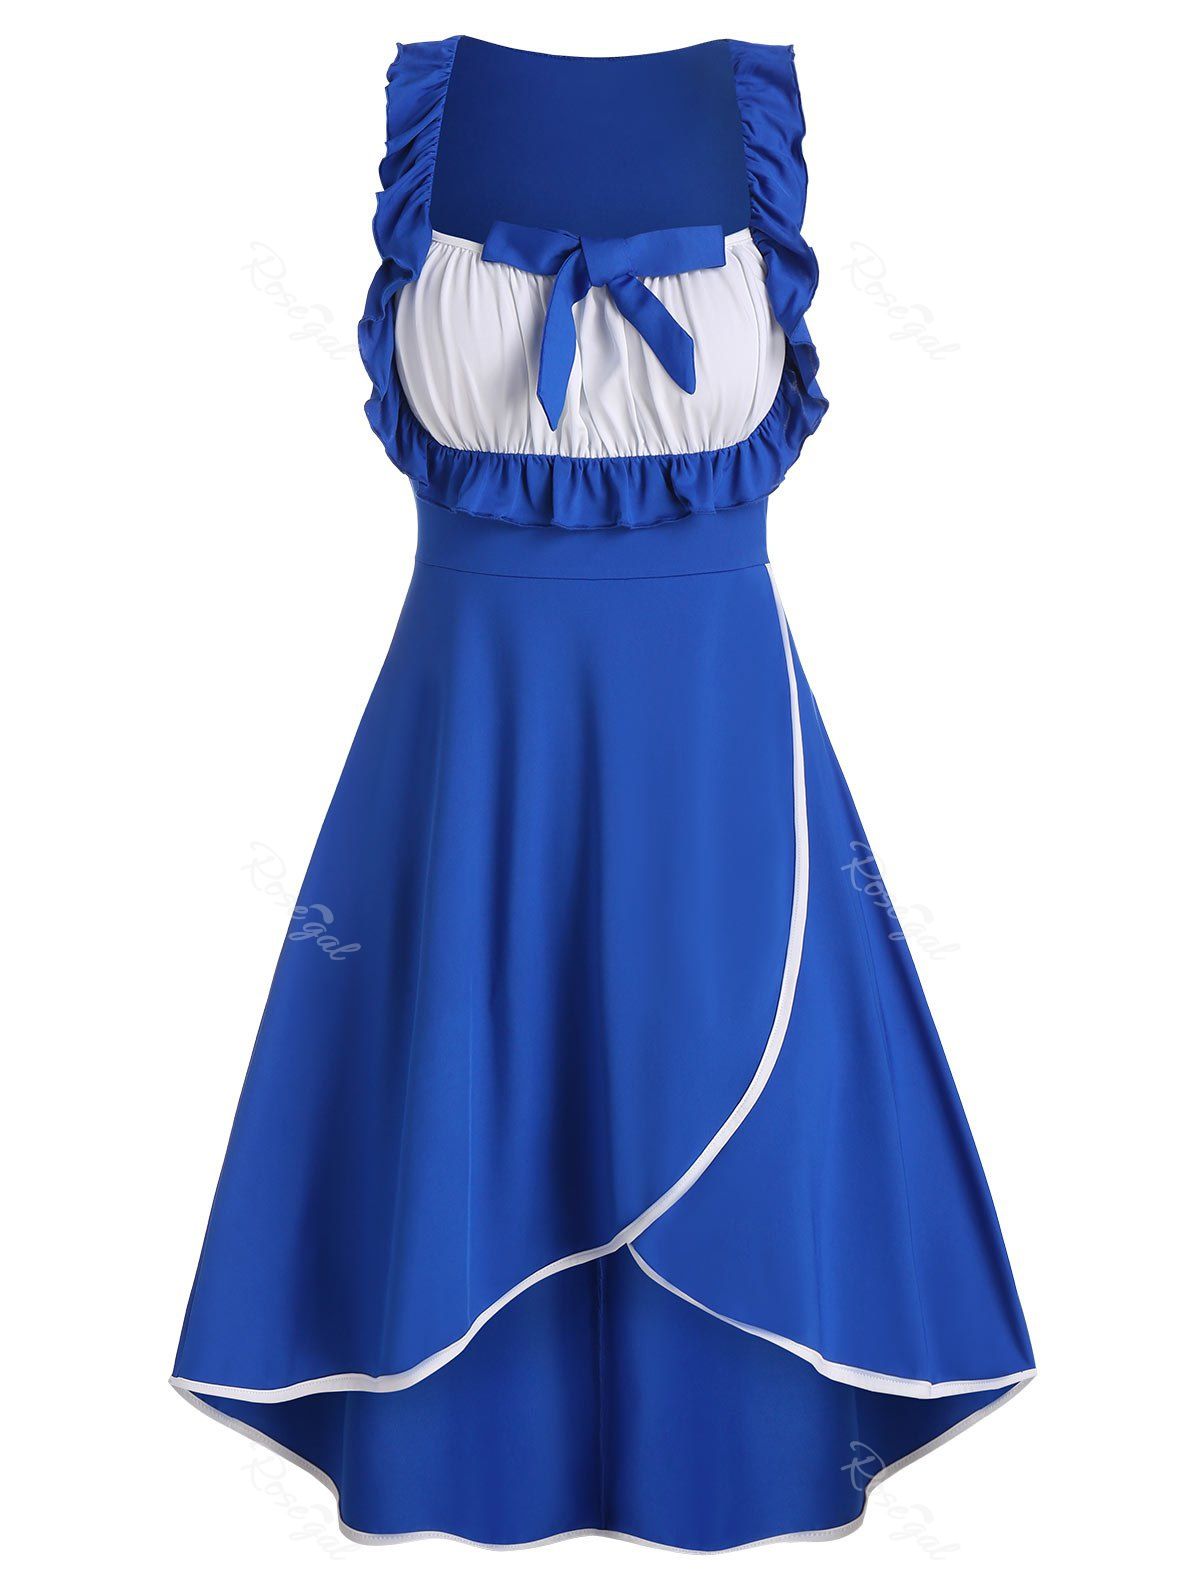 

Bowknot Ruffles Colorblock High Low Dress, Cobalt blue